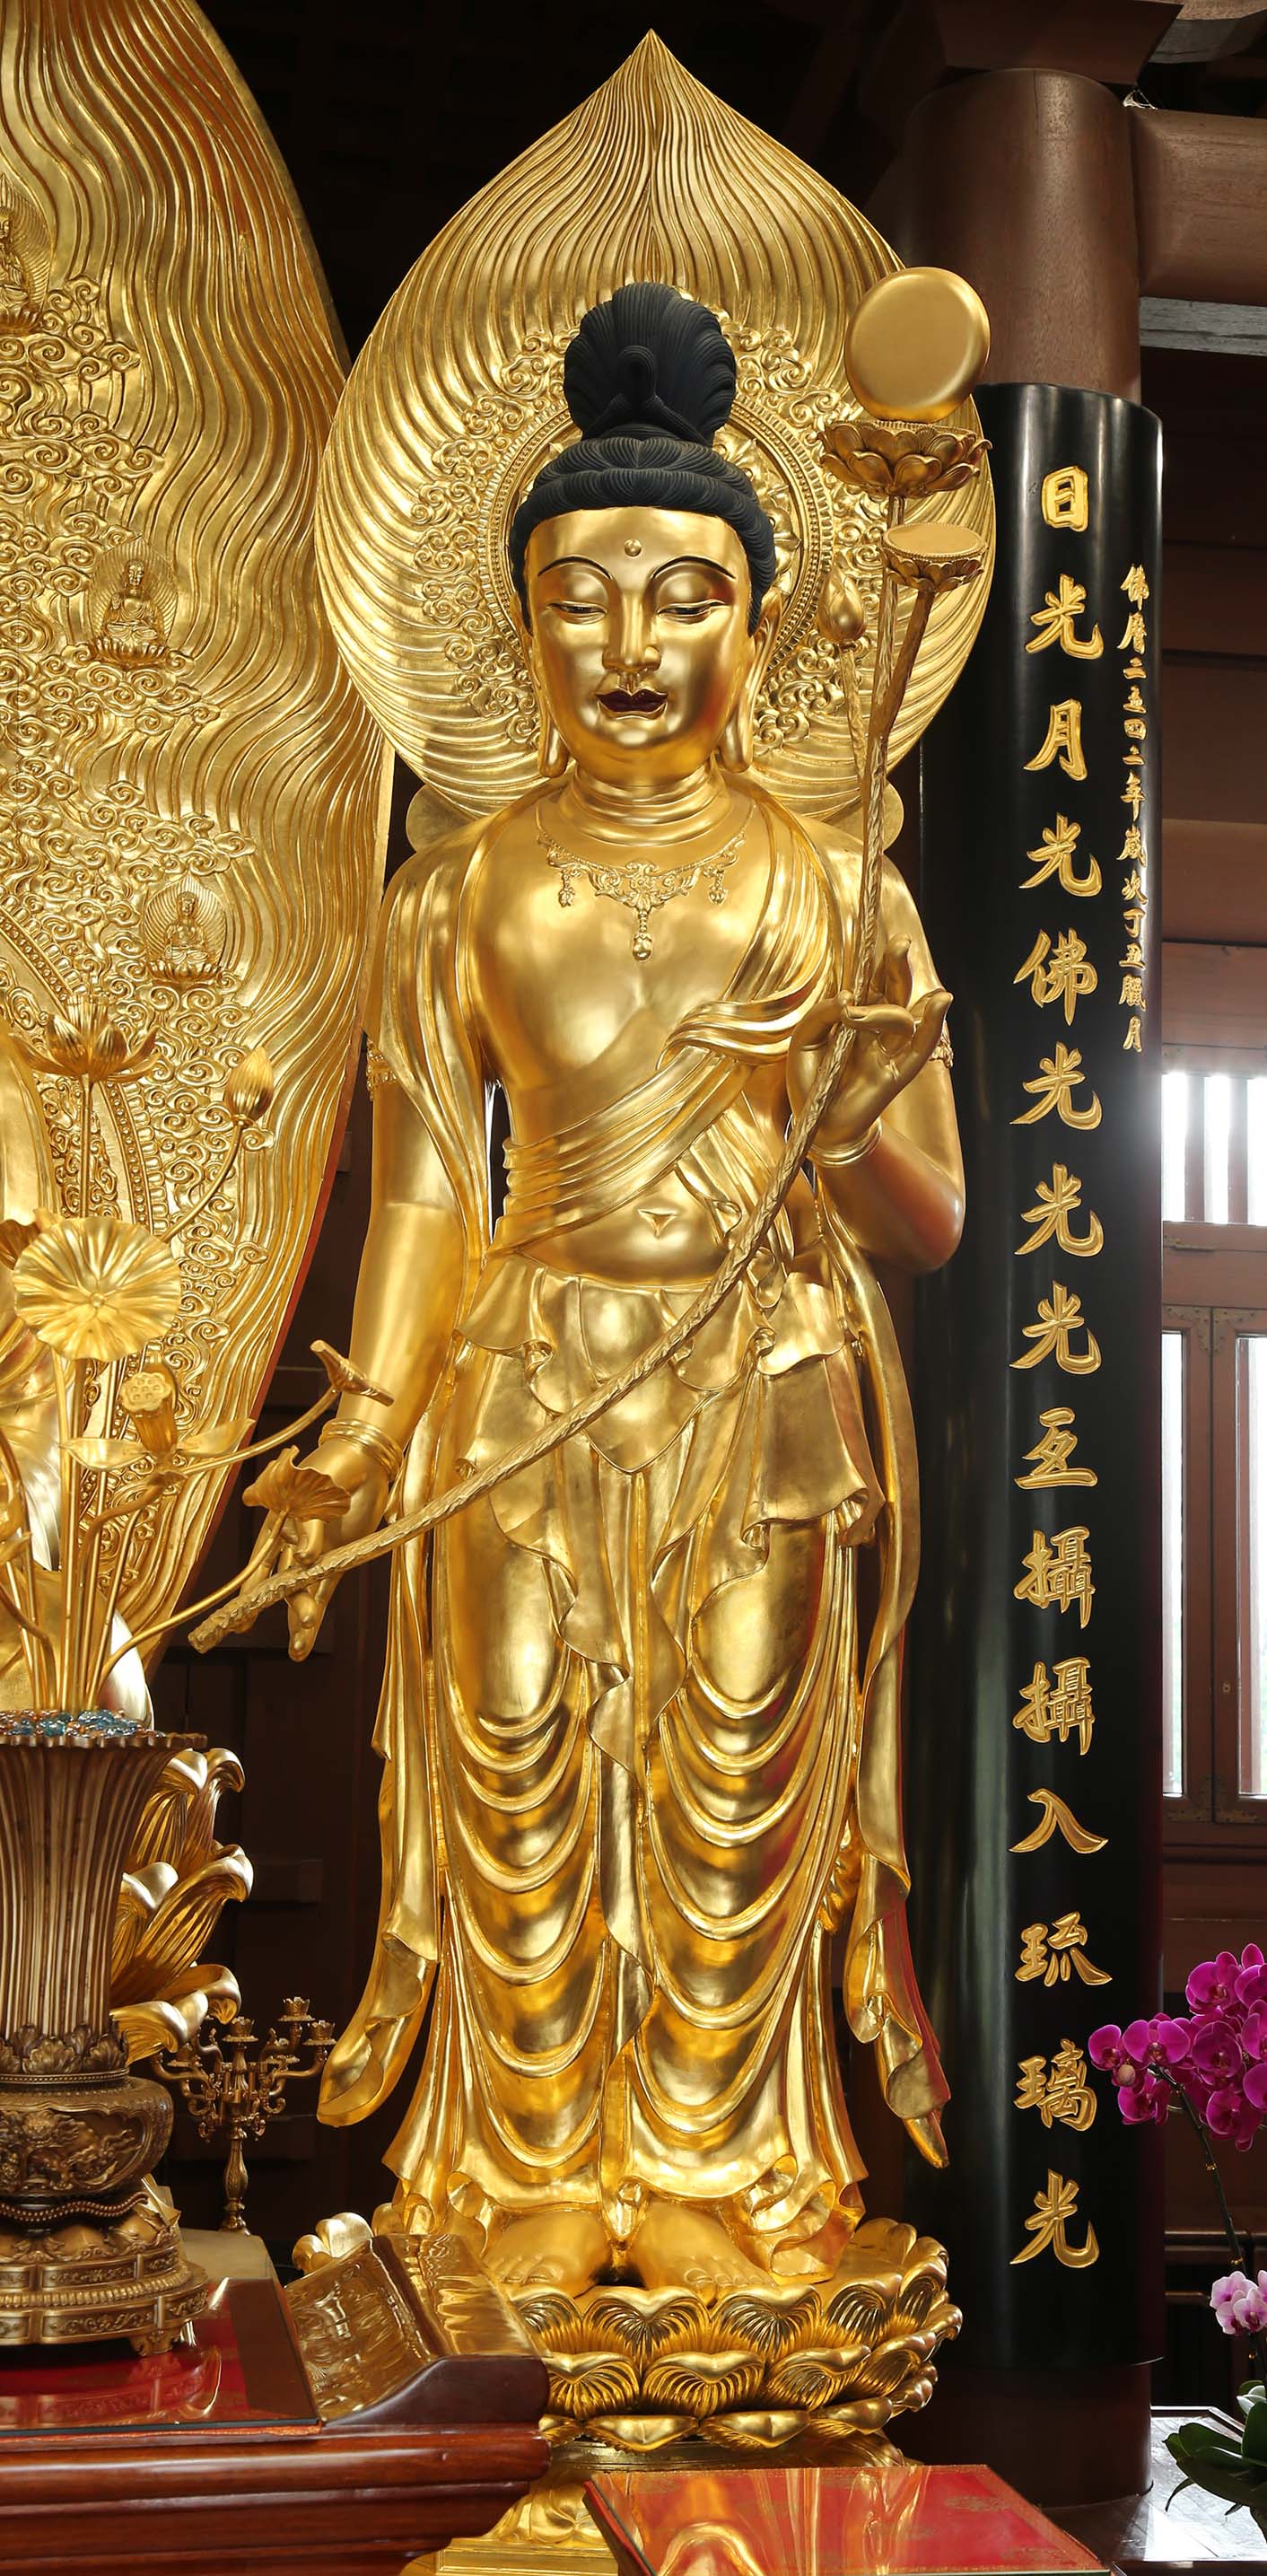 Sūryaprabha (Daylight) Bodhisattva